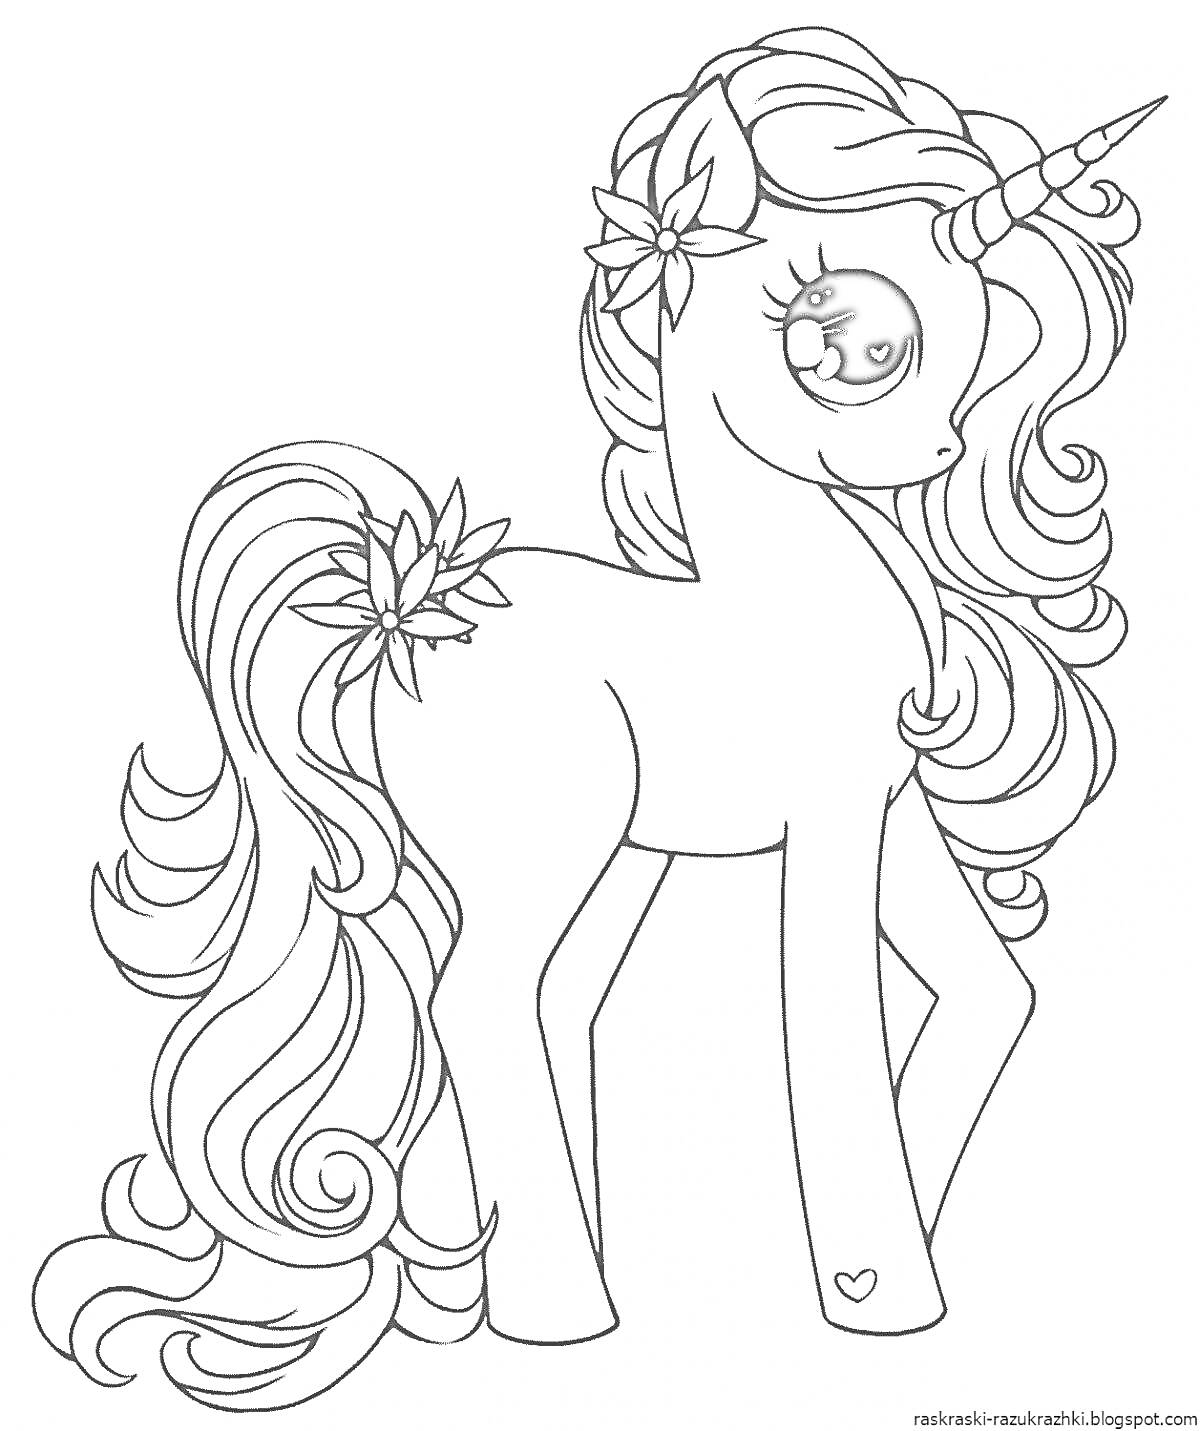 Раскраска Единорог с длинной гривой и цветками в волосах